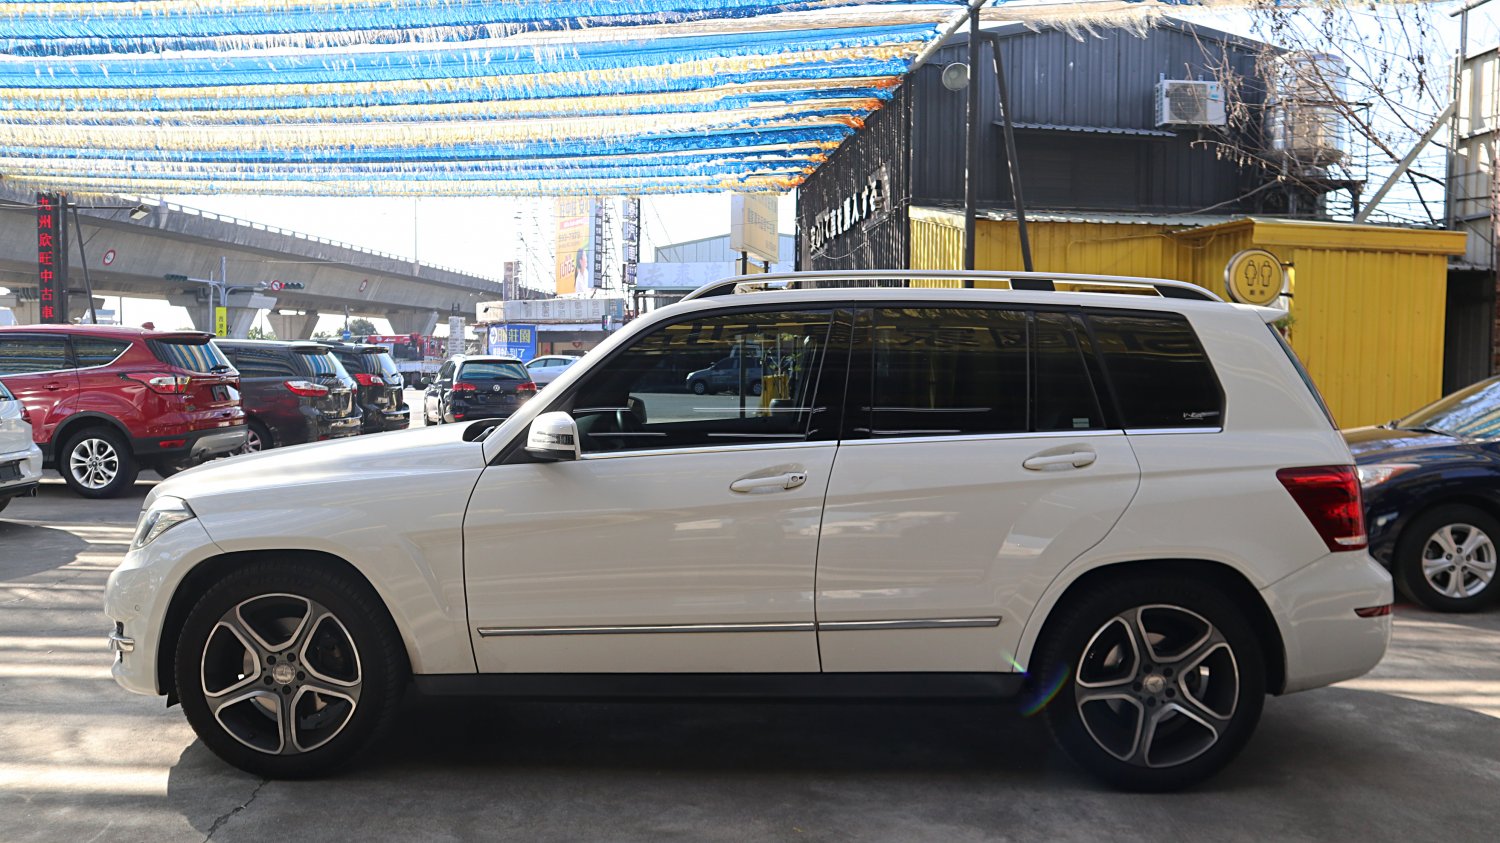 Benz 賓士 ／ GLK-Class ／ 2015年 ／ 2015年 Benz GLK220 白色 賓士休旅車 ／ TA北安店(台南)